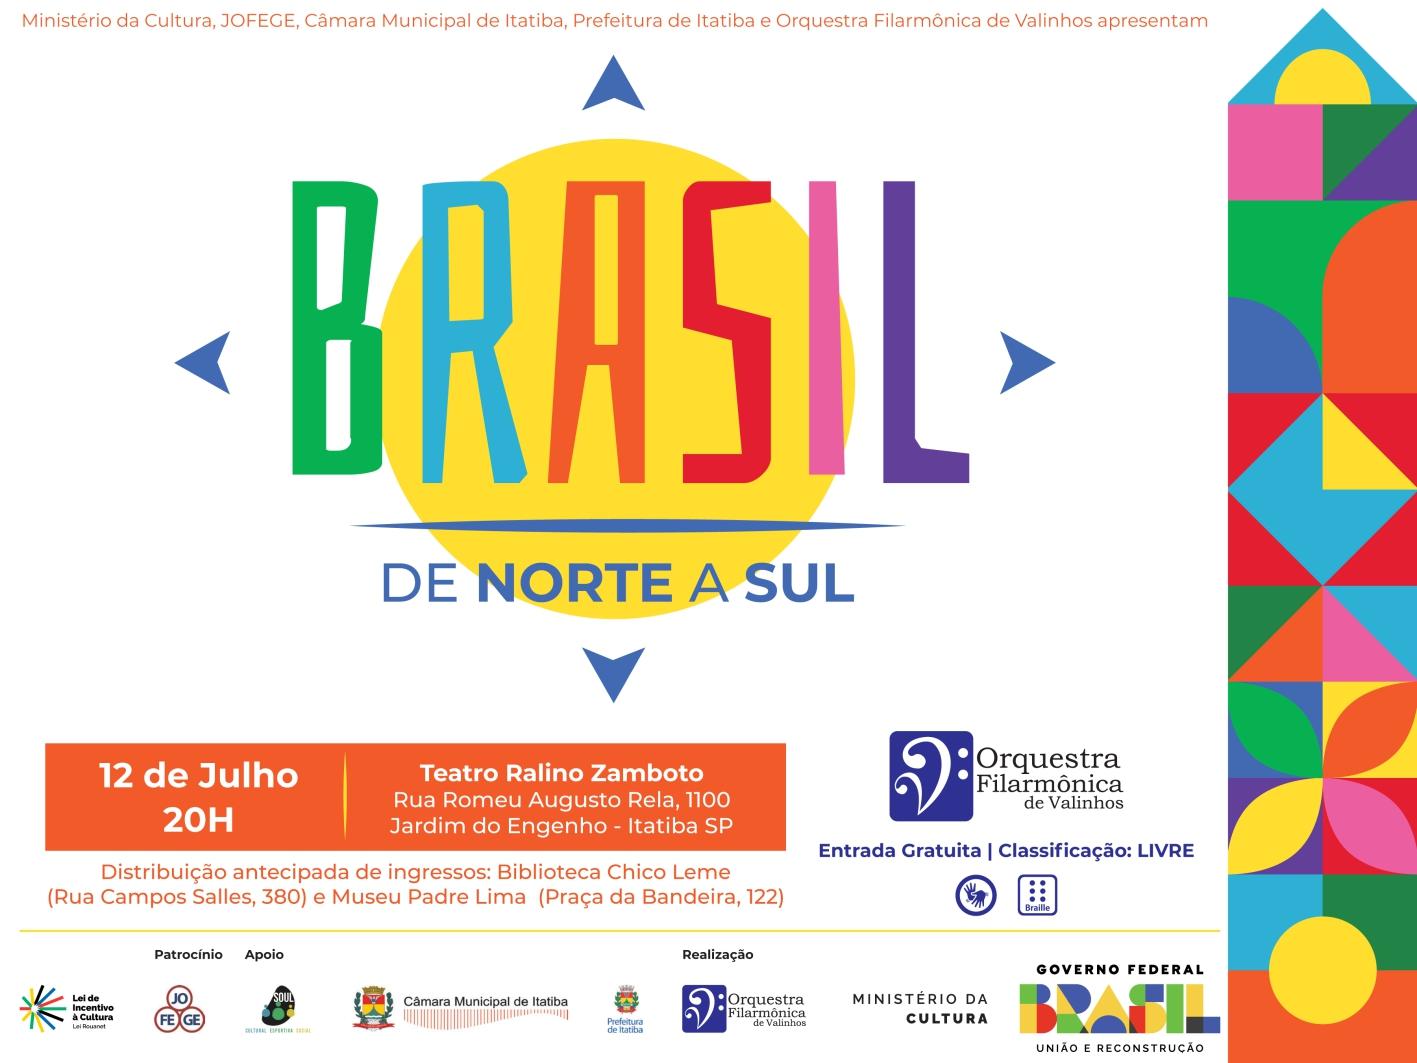 Orquestra Filarmônica Valinhos estreia projeto em Itatiba com o concerto  “Brasil de Norte a Sul”